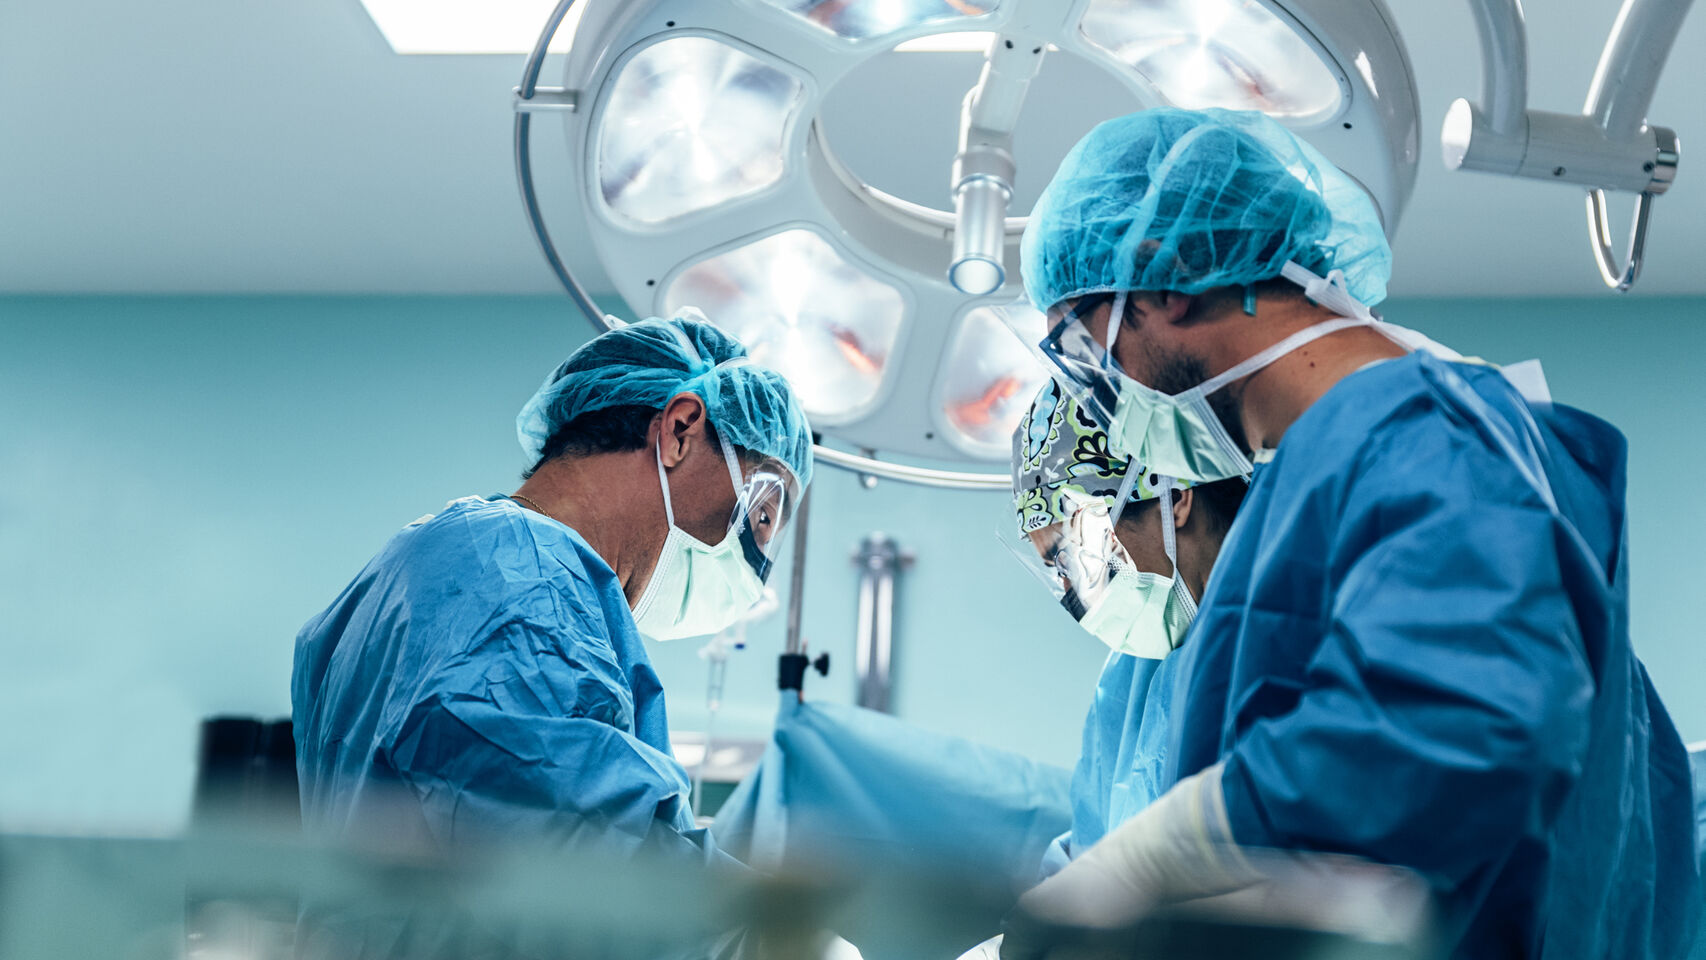 La participación de la sanidad privada podría incrementar el número de trasplantes